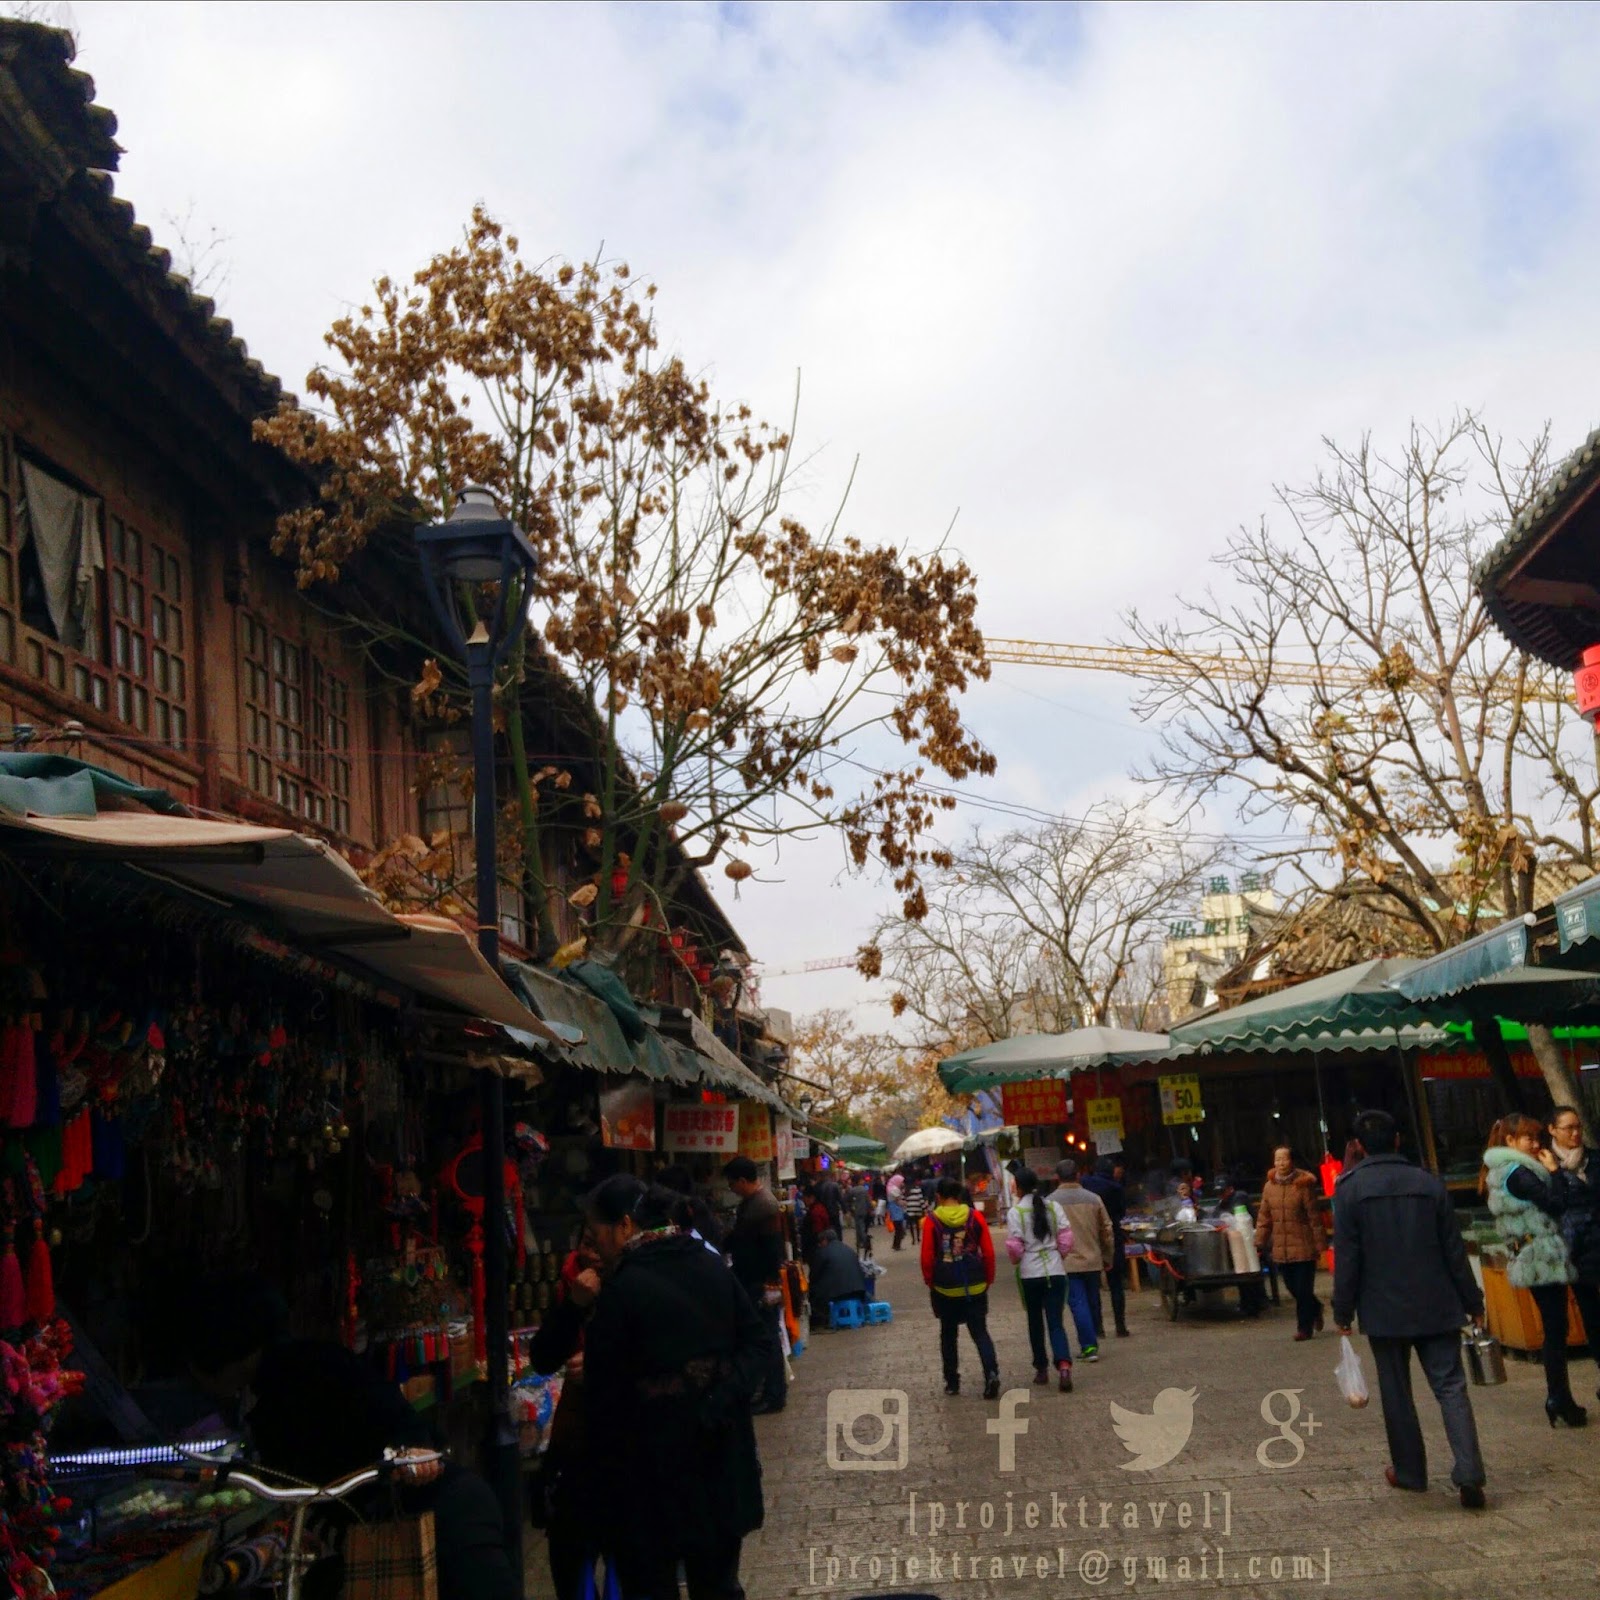 Guandu Ancient Town